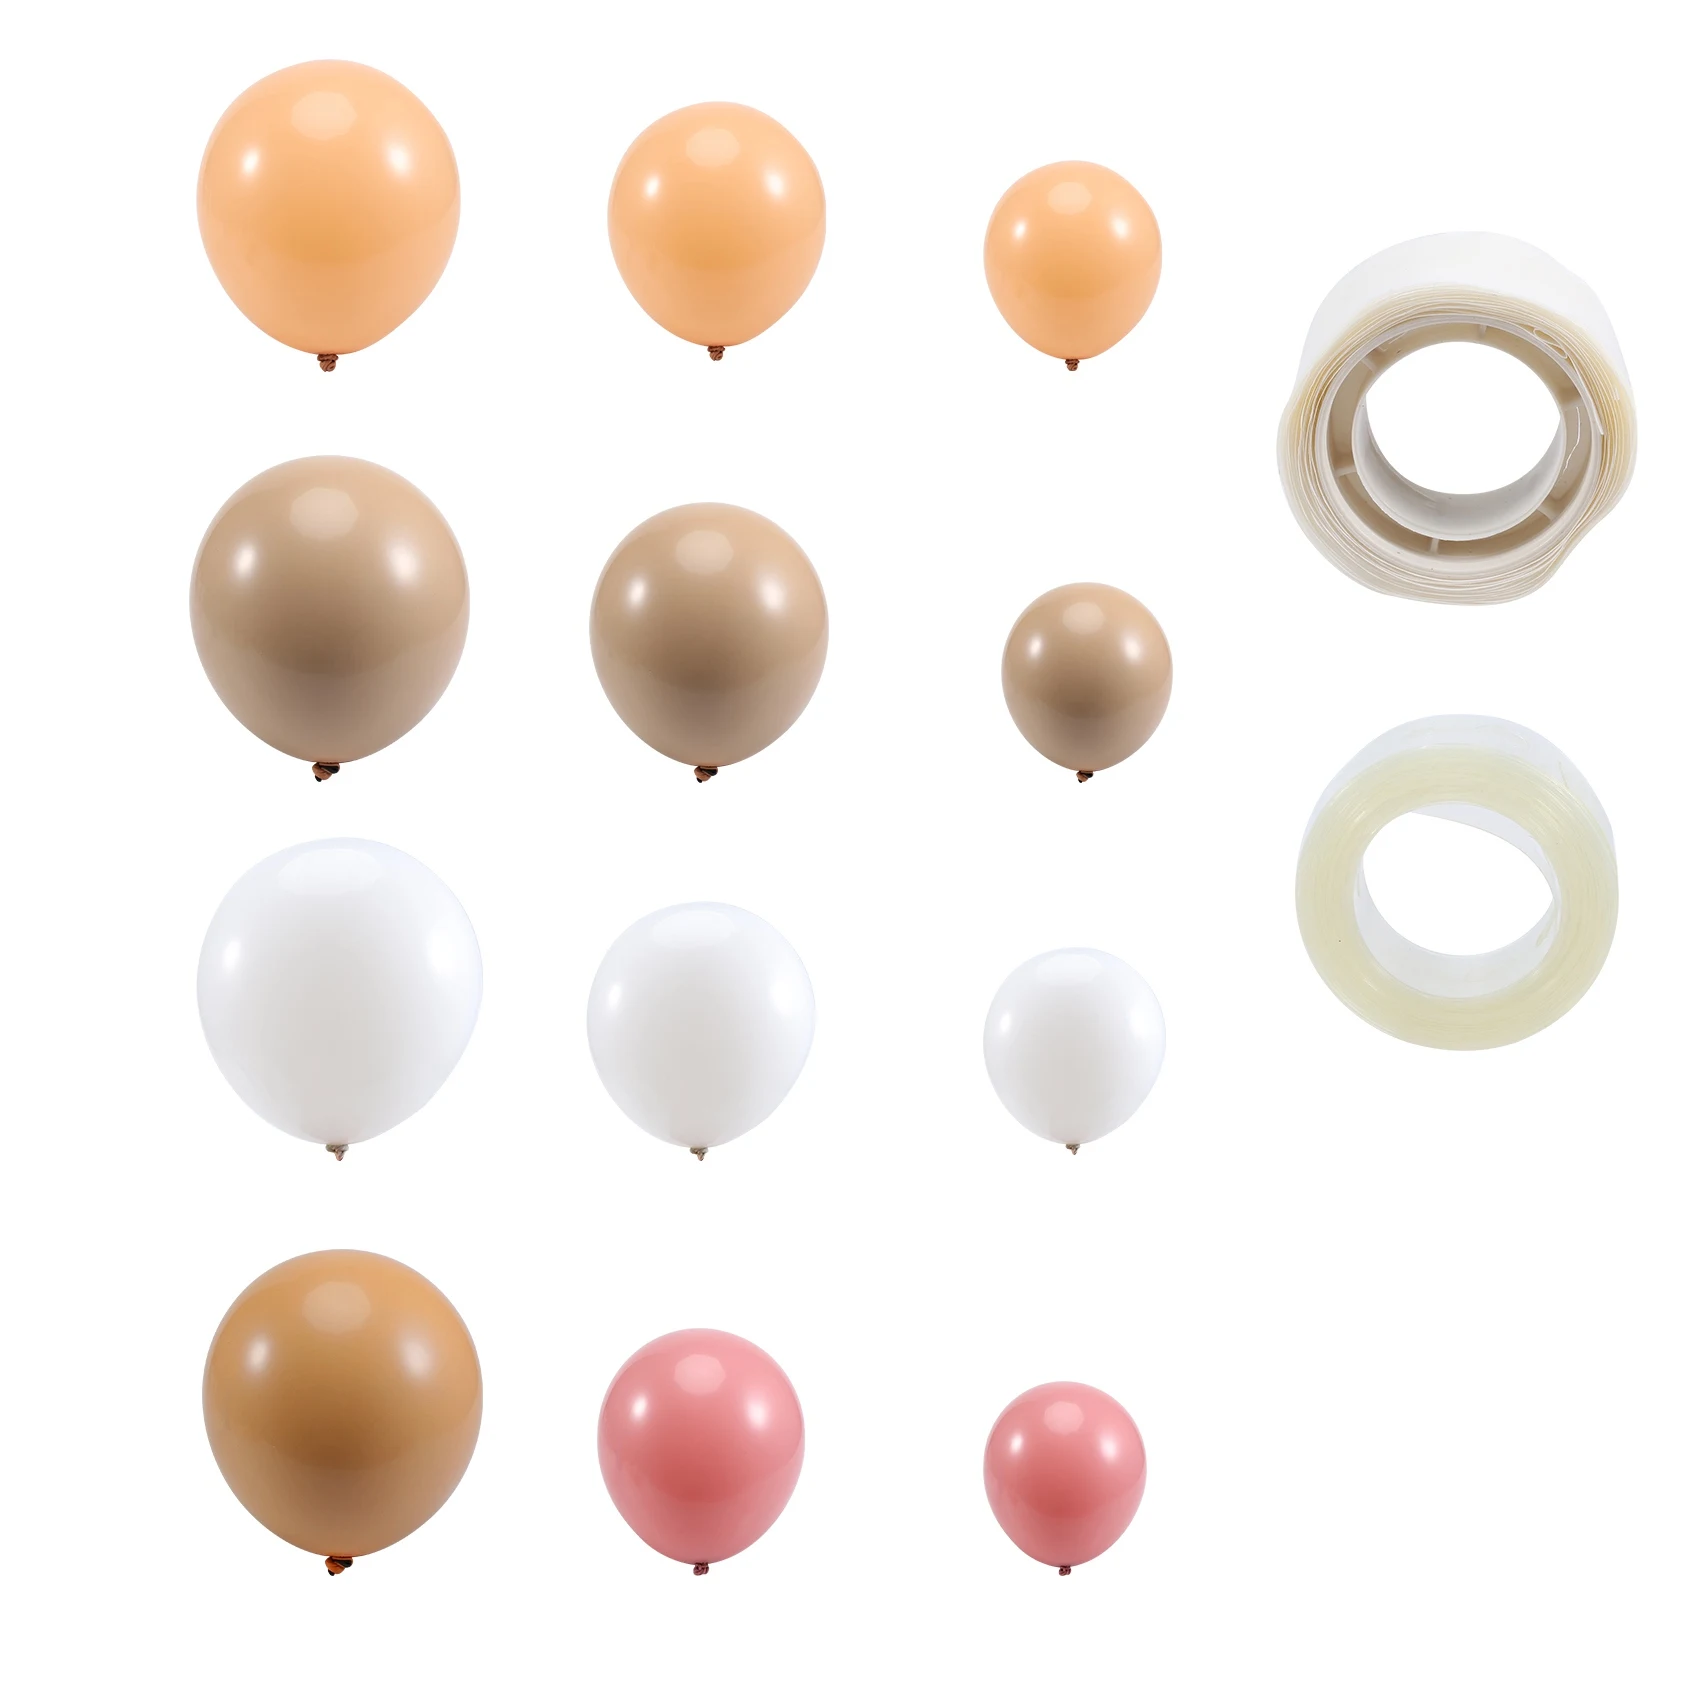 

Набор арочных шаров, набор из 182 разноцветных гирлянд для воздушных шаров для украшения дня рождения, свадьбы, девичника